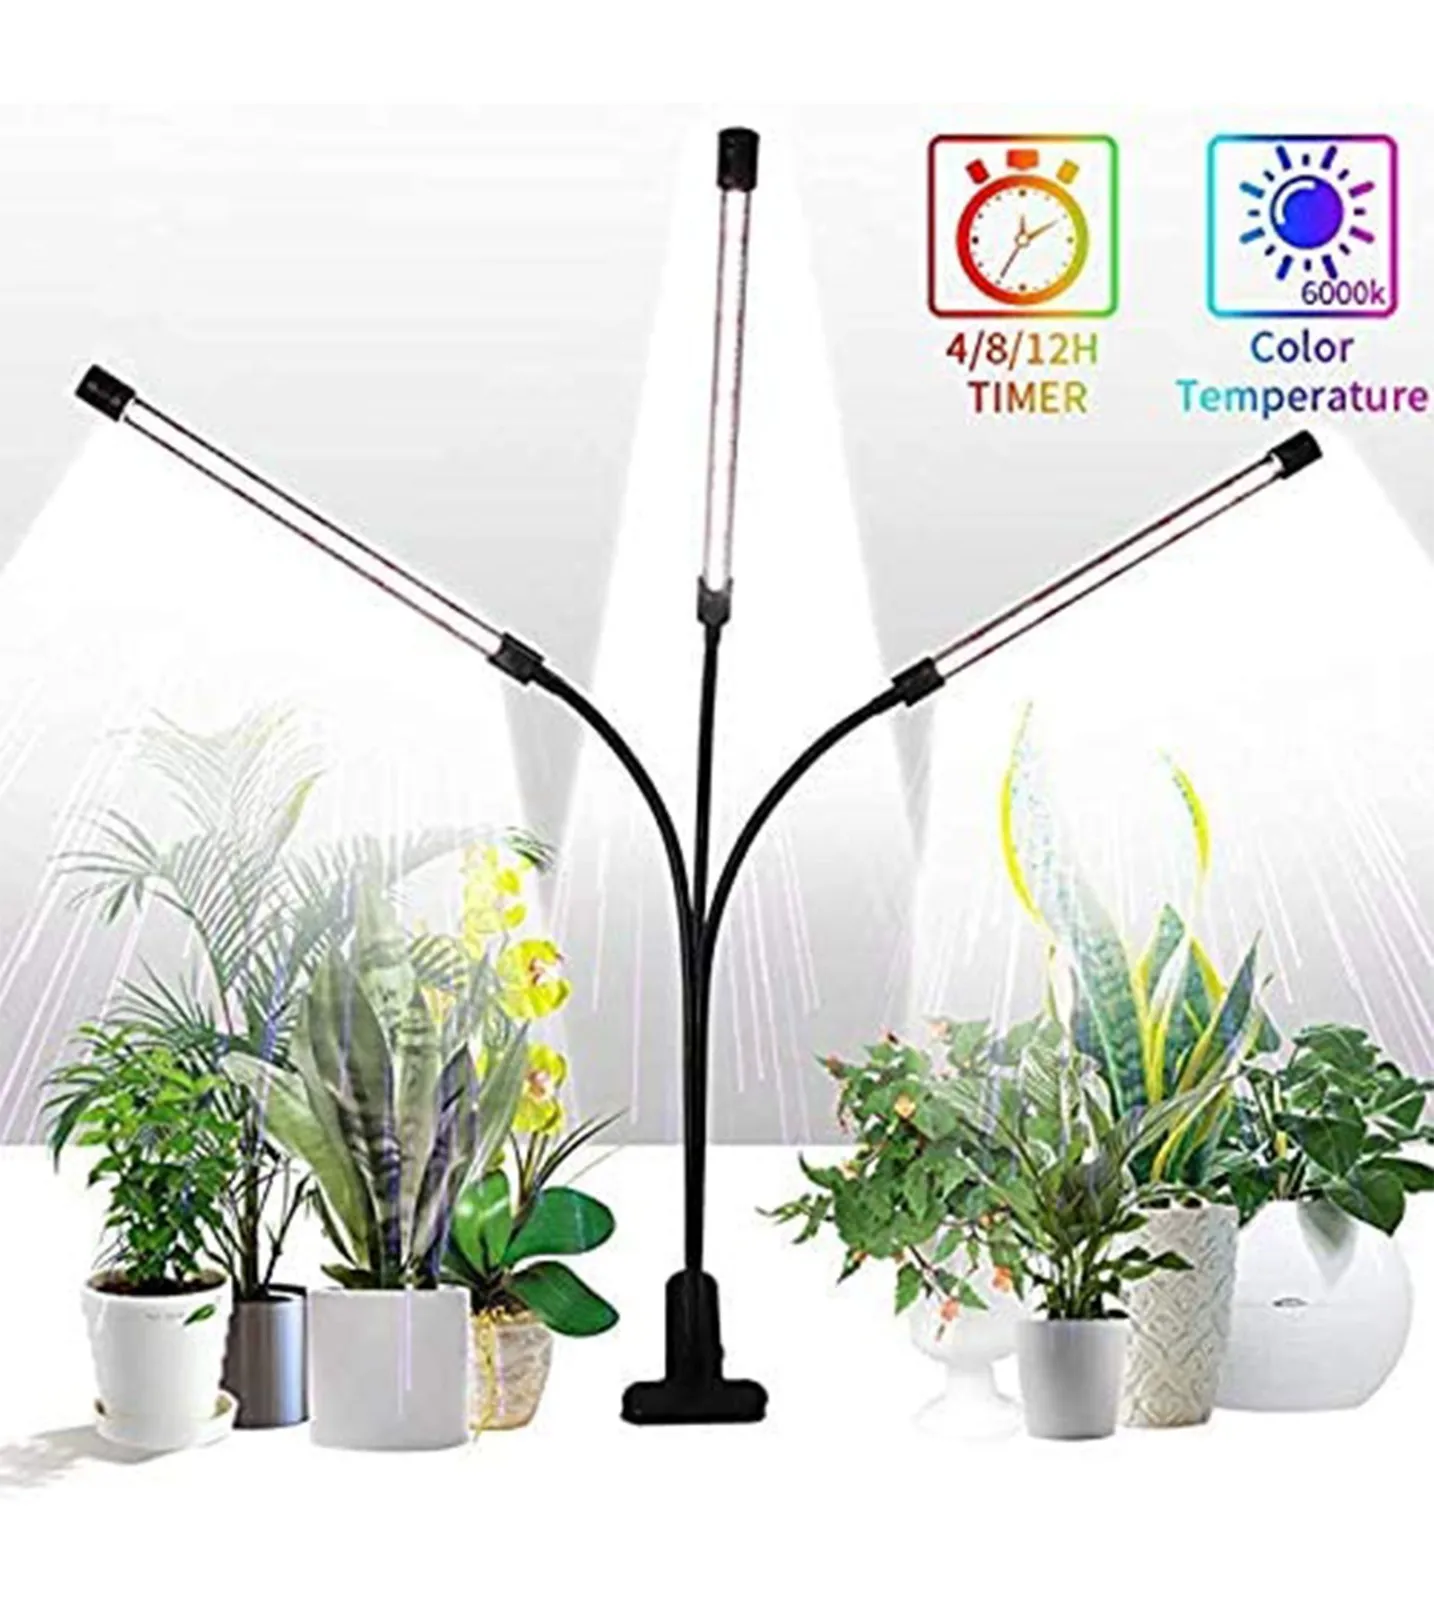 Lampe de croissance LED pour plantes 8 niveaux dintensité variable Spectre complet pour serre de jardin 3/6/12 h Allumage et extinction automatiques avec minuterie 